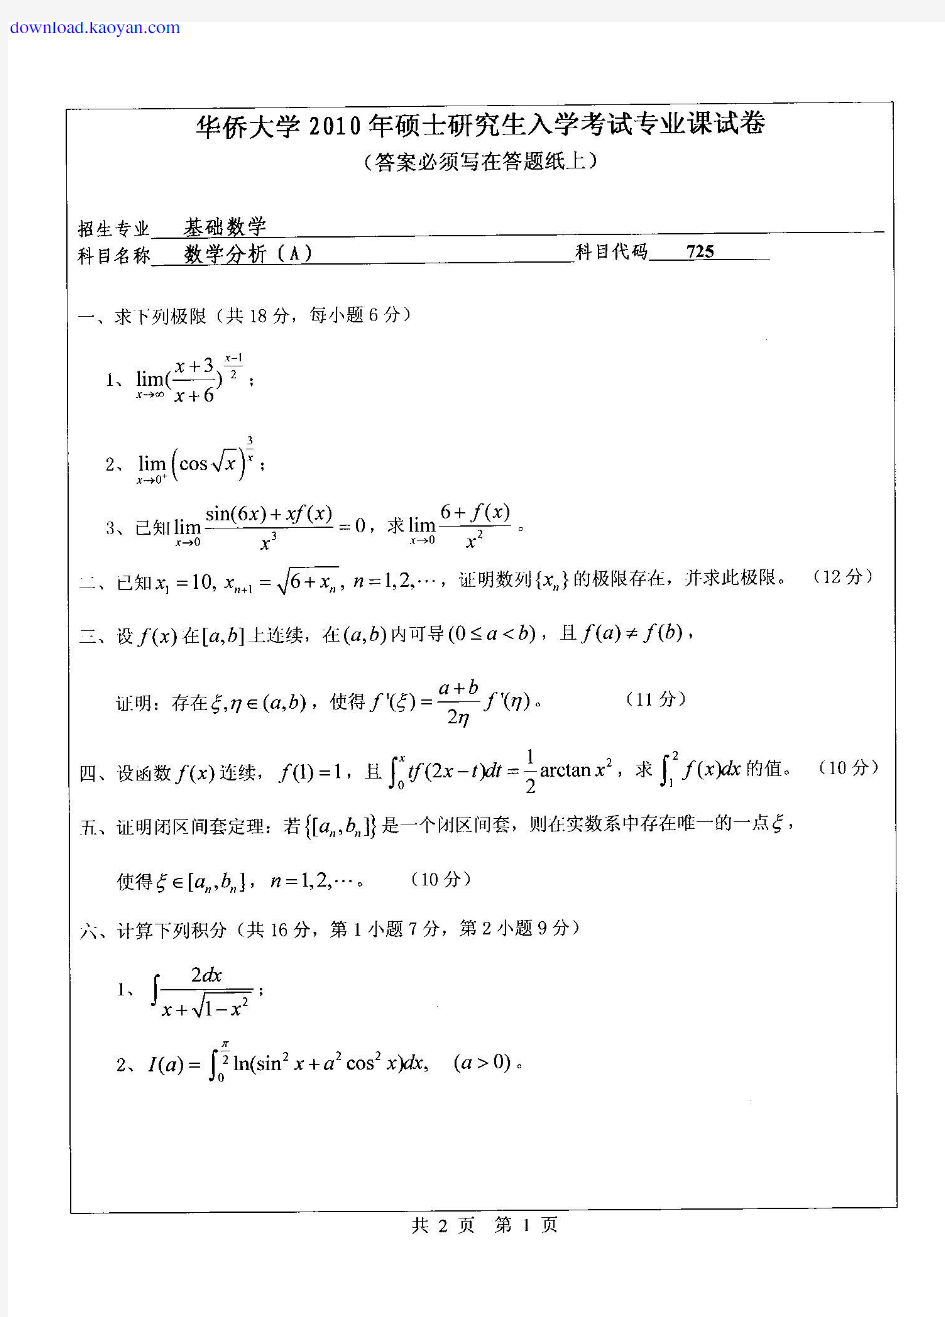 2010年华侨大学725数学分析考研试题